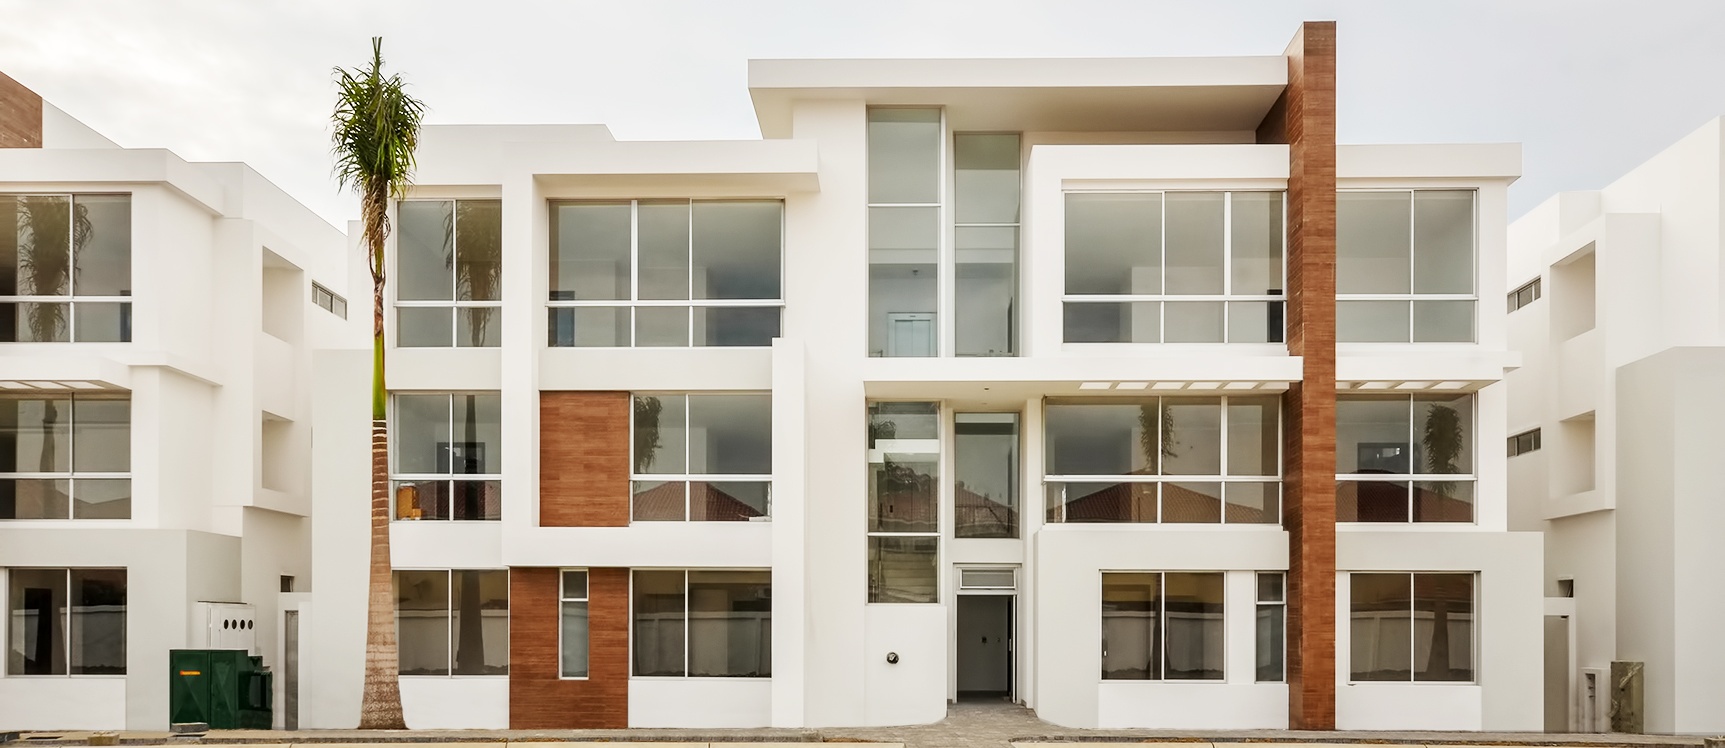 GeoBienes - Departamento en tercer piso en venta sector Samborondón - Plusvalia Guayaquil Casas de venta y alquiler Inmobiliaria Ecuador